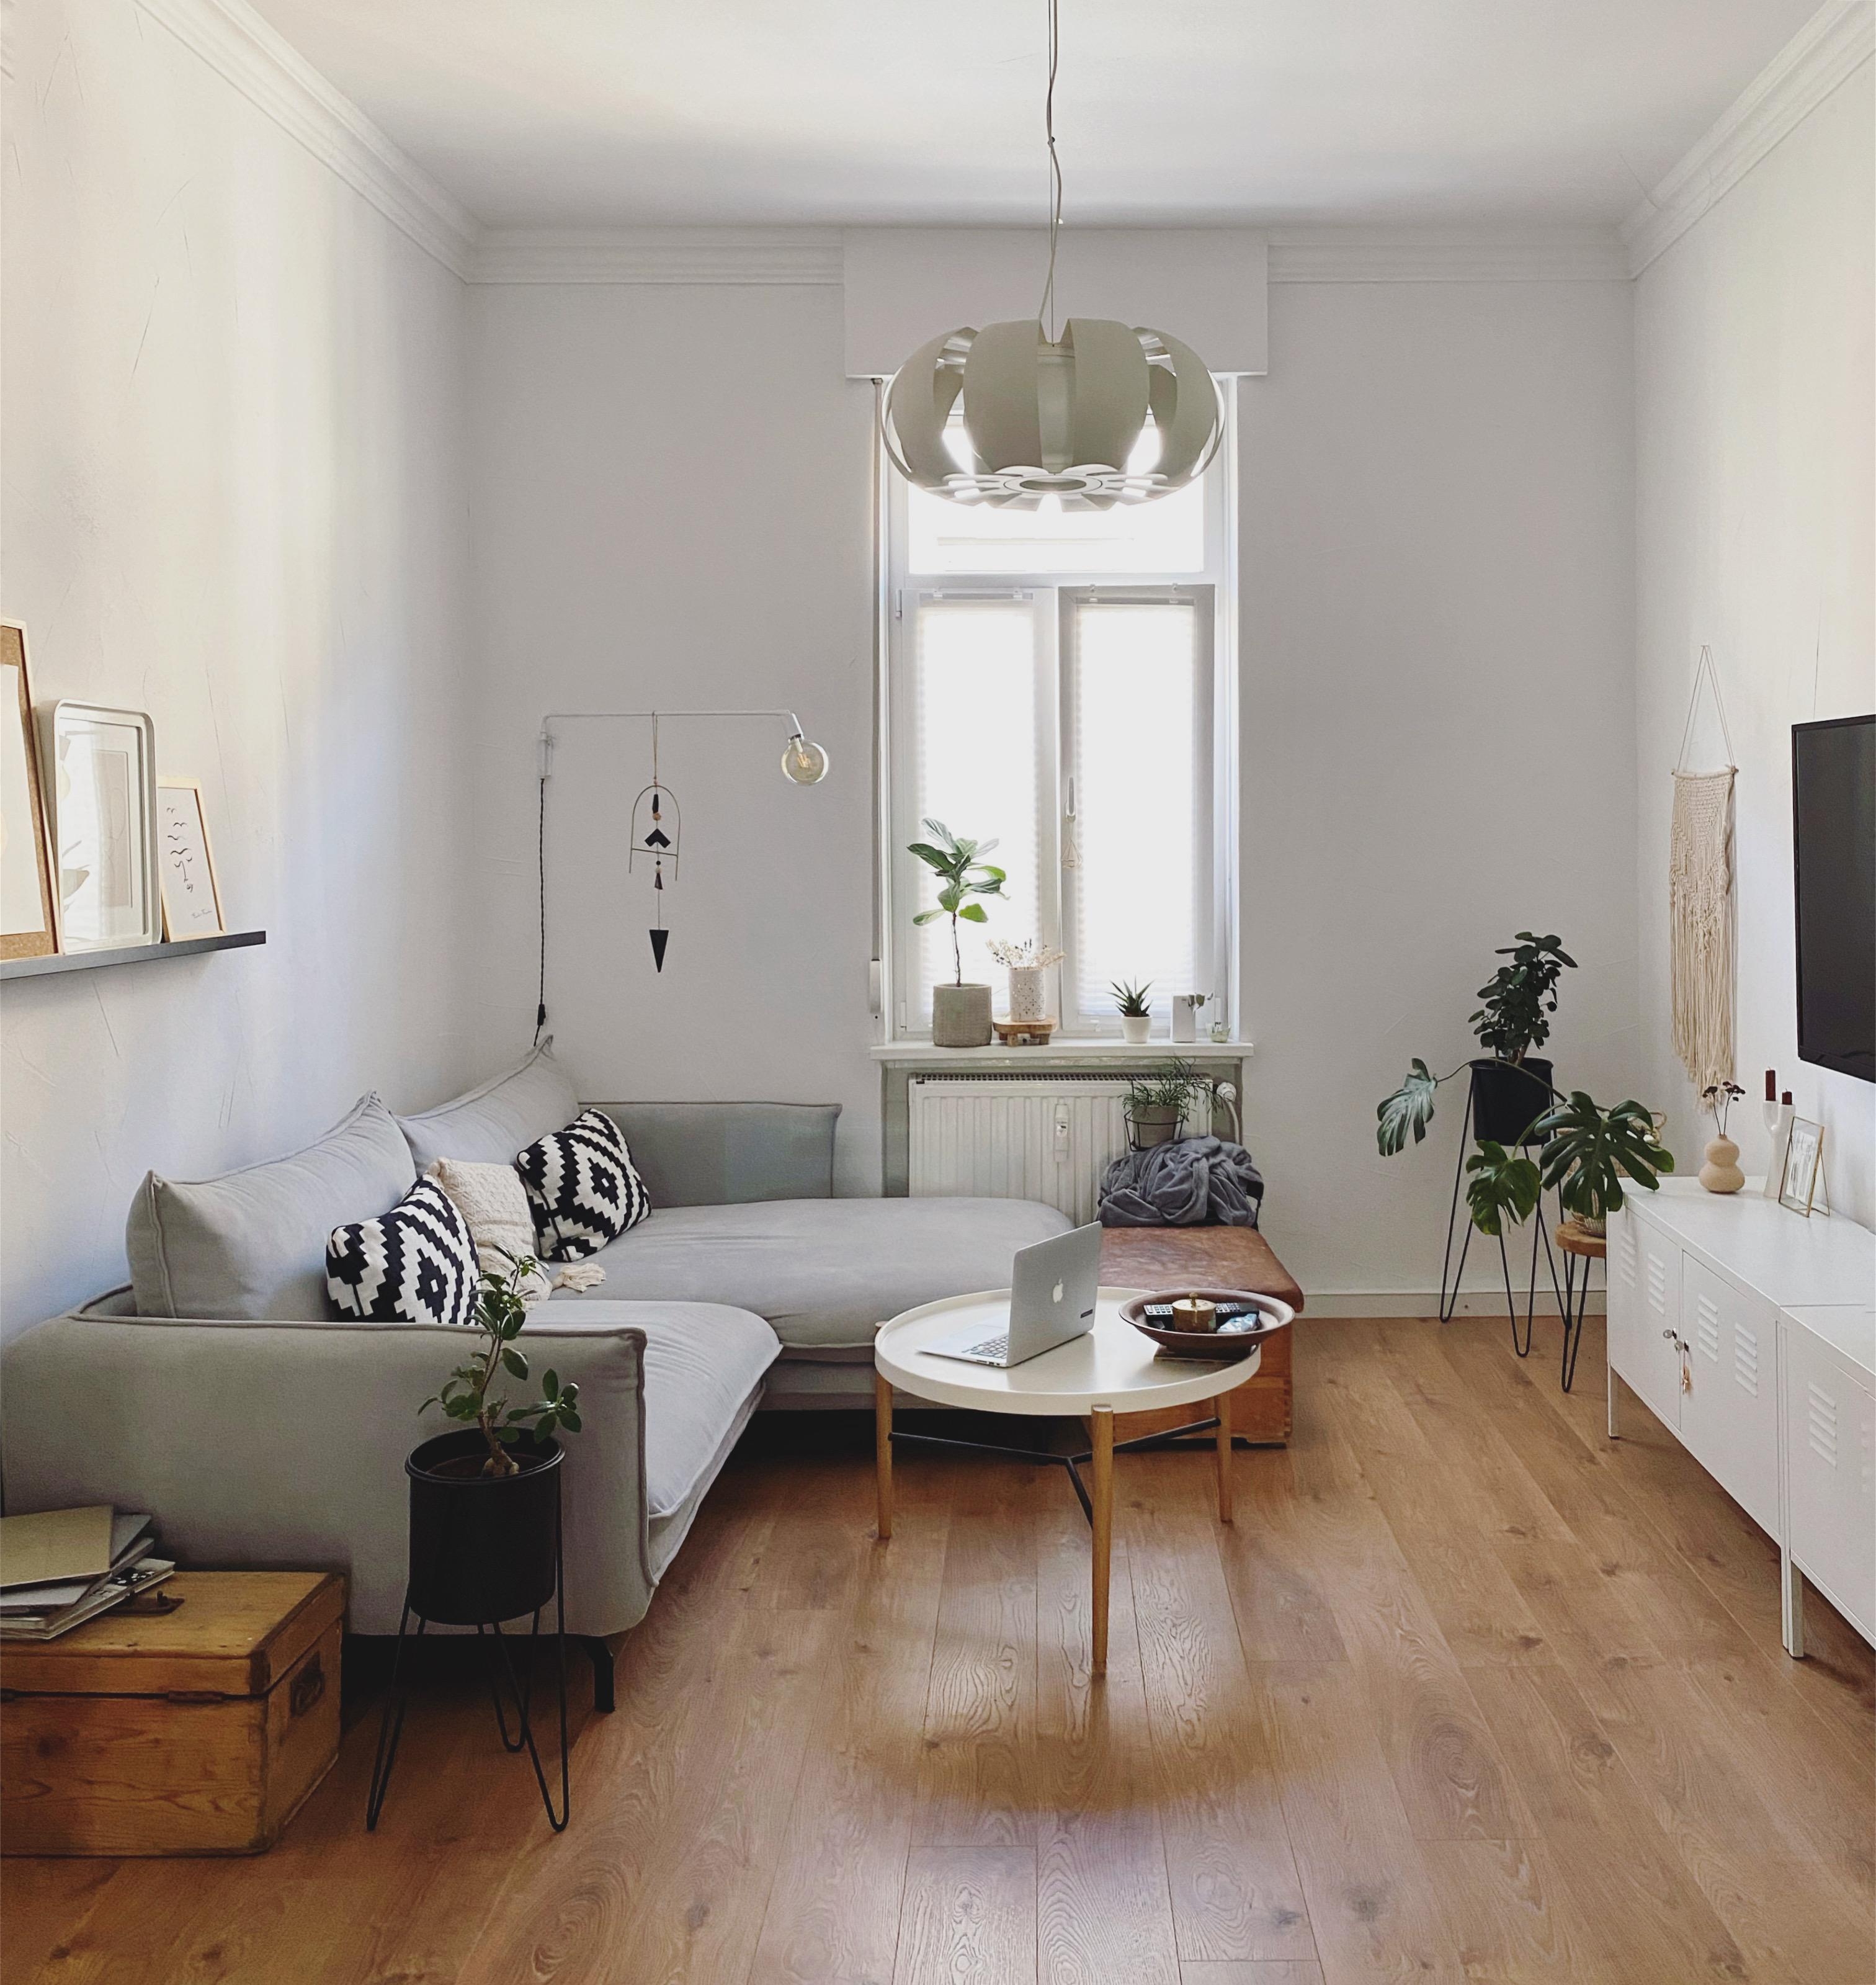 #fenster #couchstyle #couchmagazin #wohnzimmer #couchecke #sofa #ecksofa #livingroom